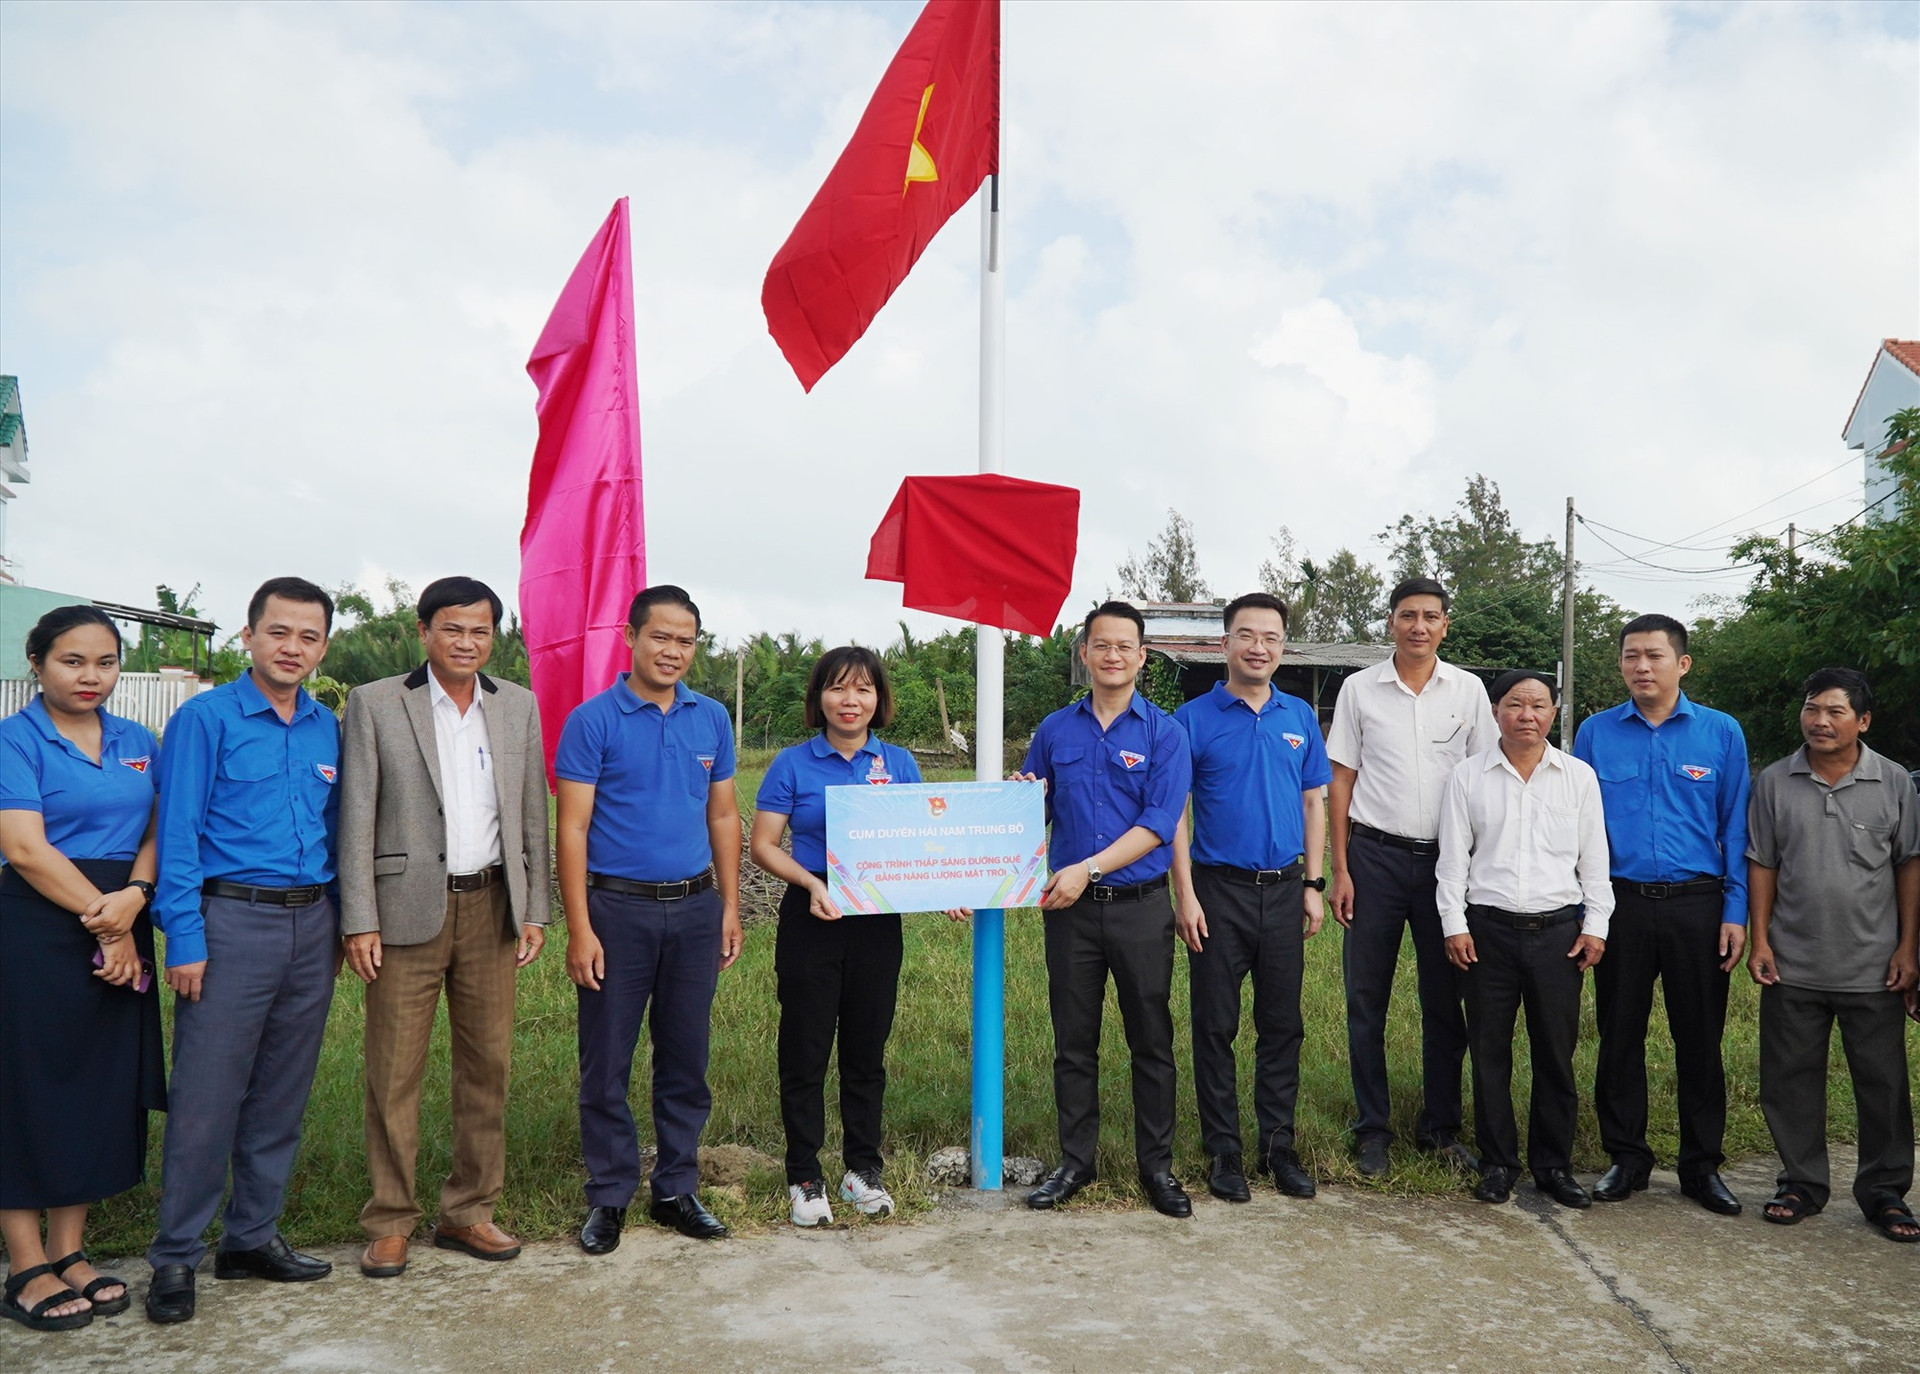 Đại diện các đơn vị Cụm Duyên hải Nam Trung bộ trao tặng bảng biểu trưng công trình Thắp sáng đường quê trị giá 30 triệu đồng.